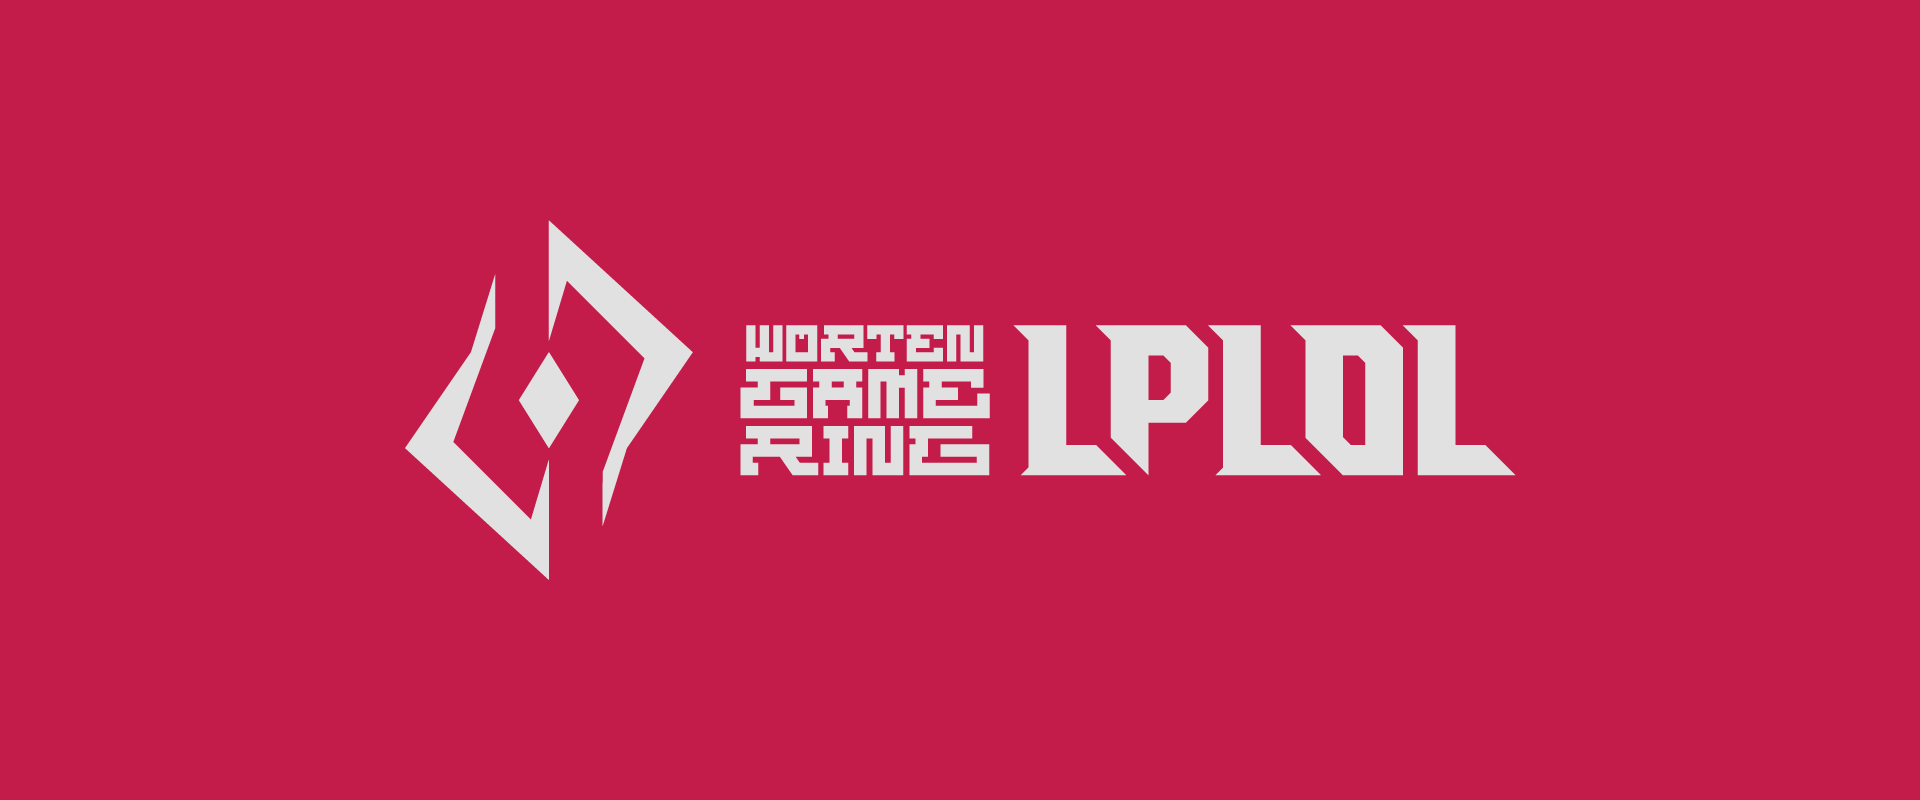 LPLOL abre processo de candidatura para a Liga Portuguesa de League of Legends